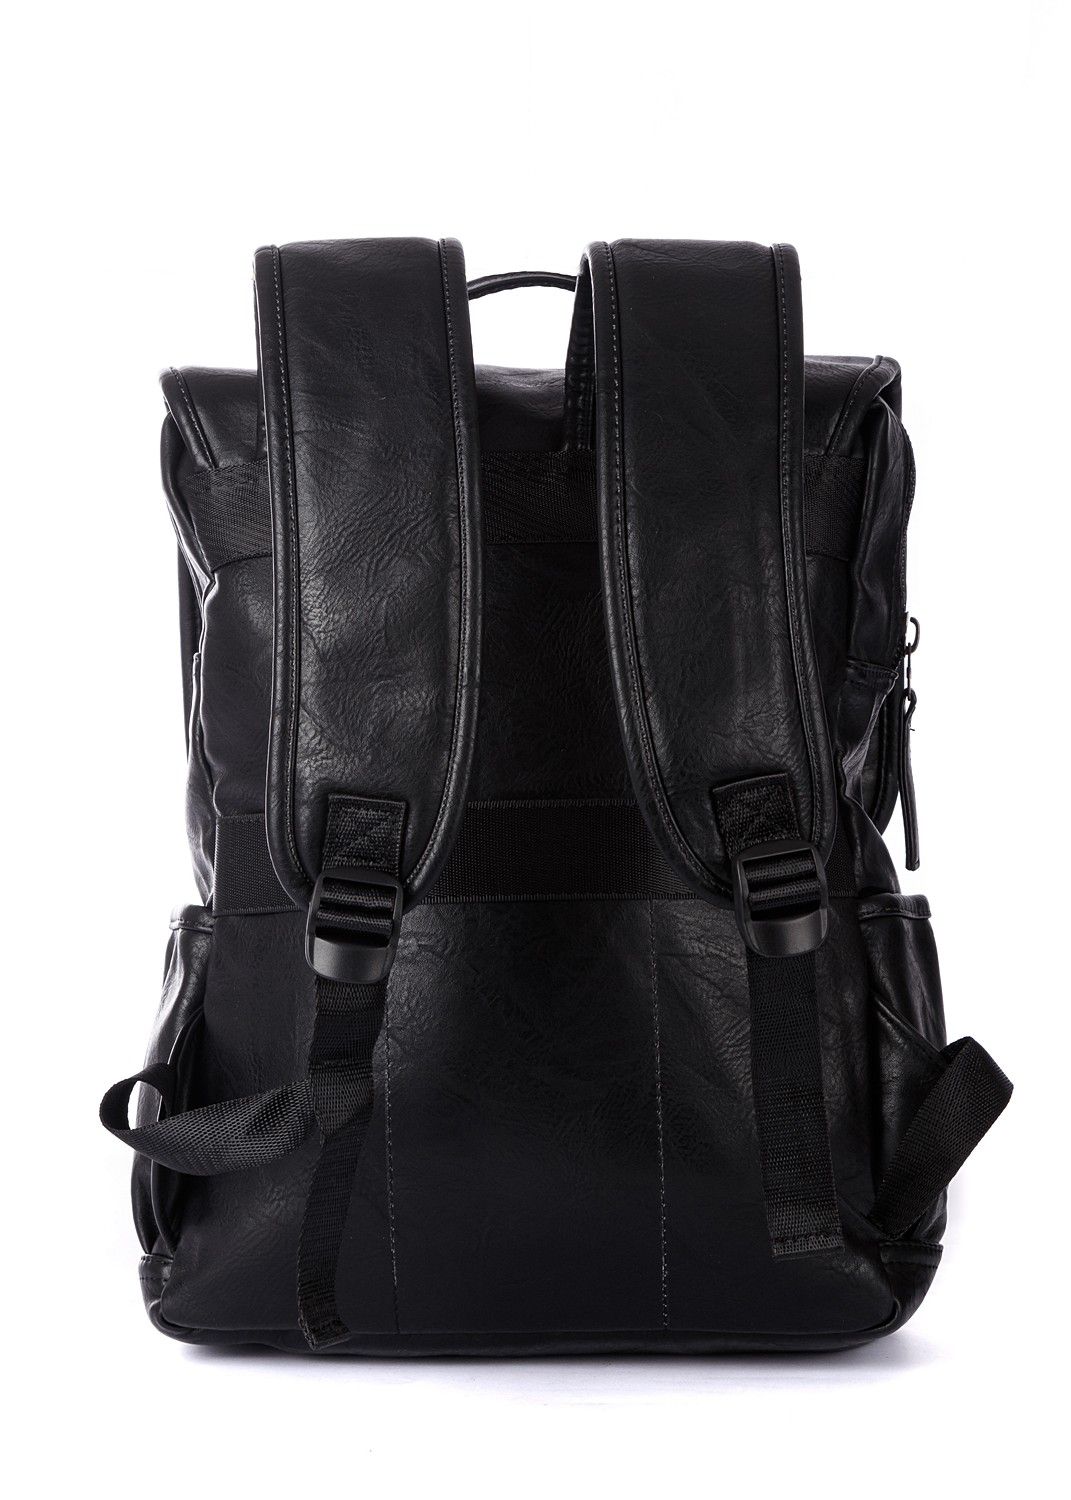 Рюкзак мужской / женский городской из искусственной кожи, черный, с широкими лямками, объем 14л